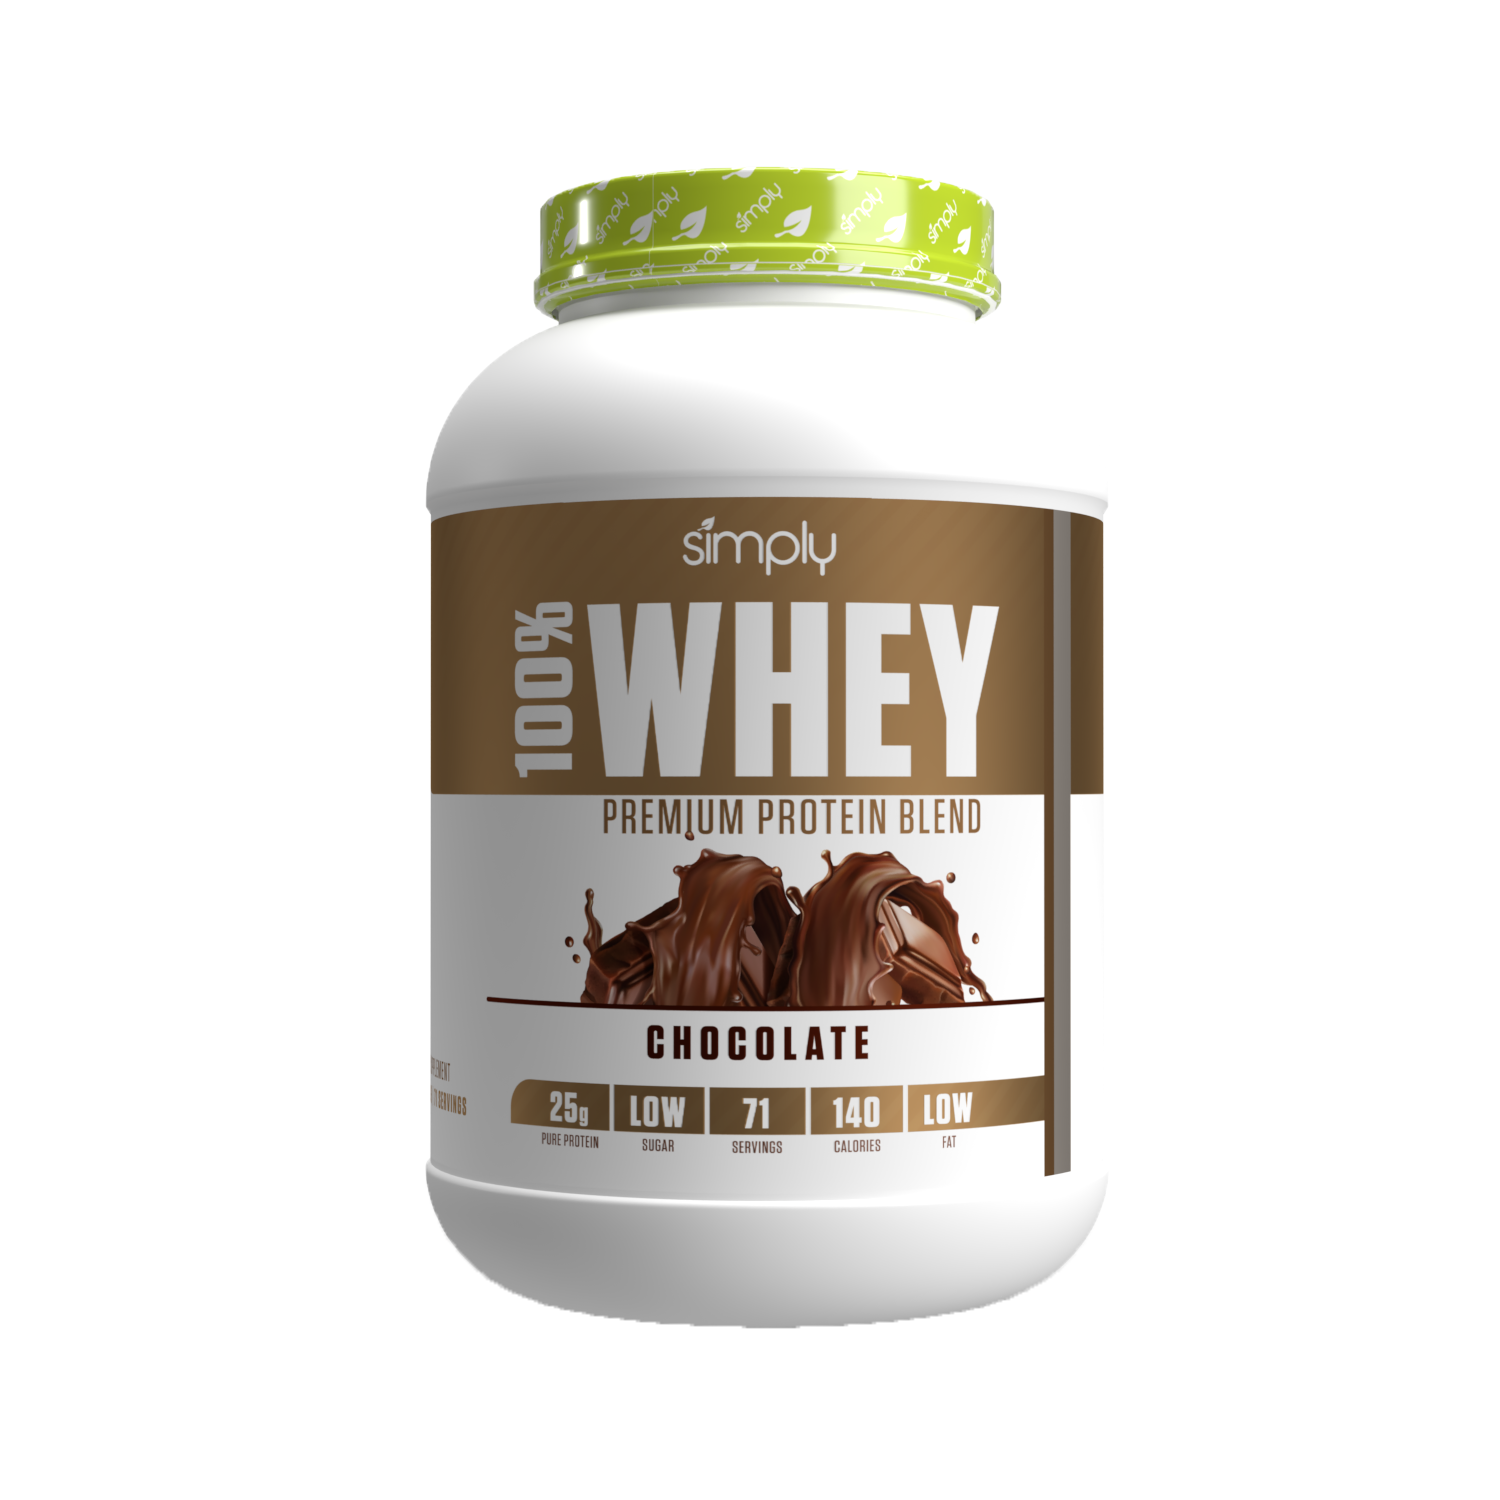 100% Whey Premium Protein Blend